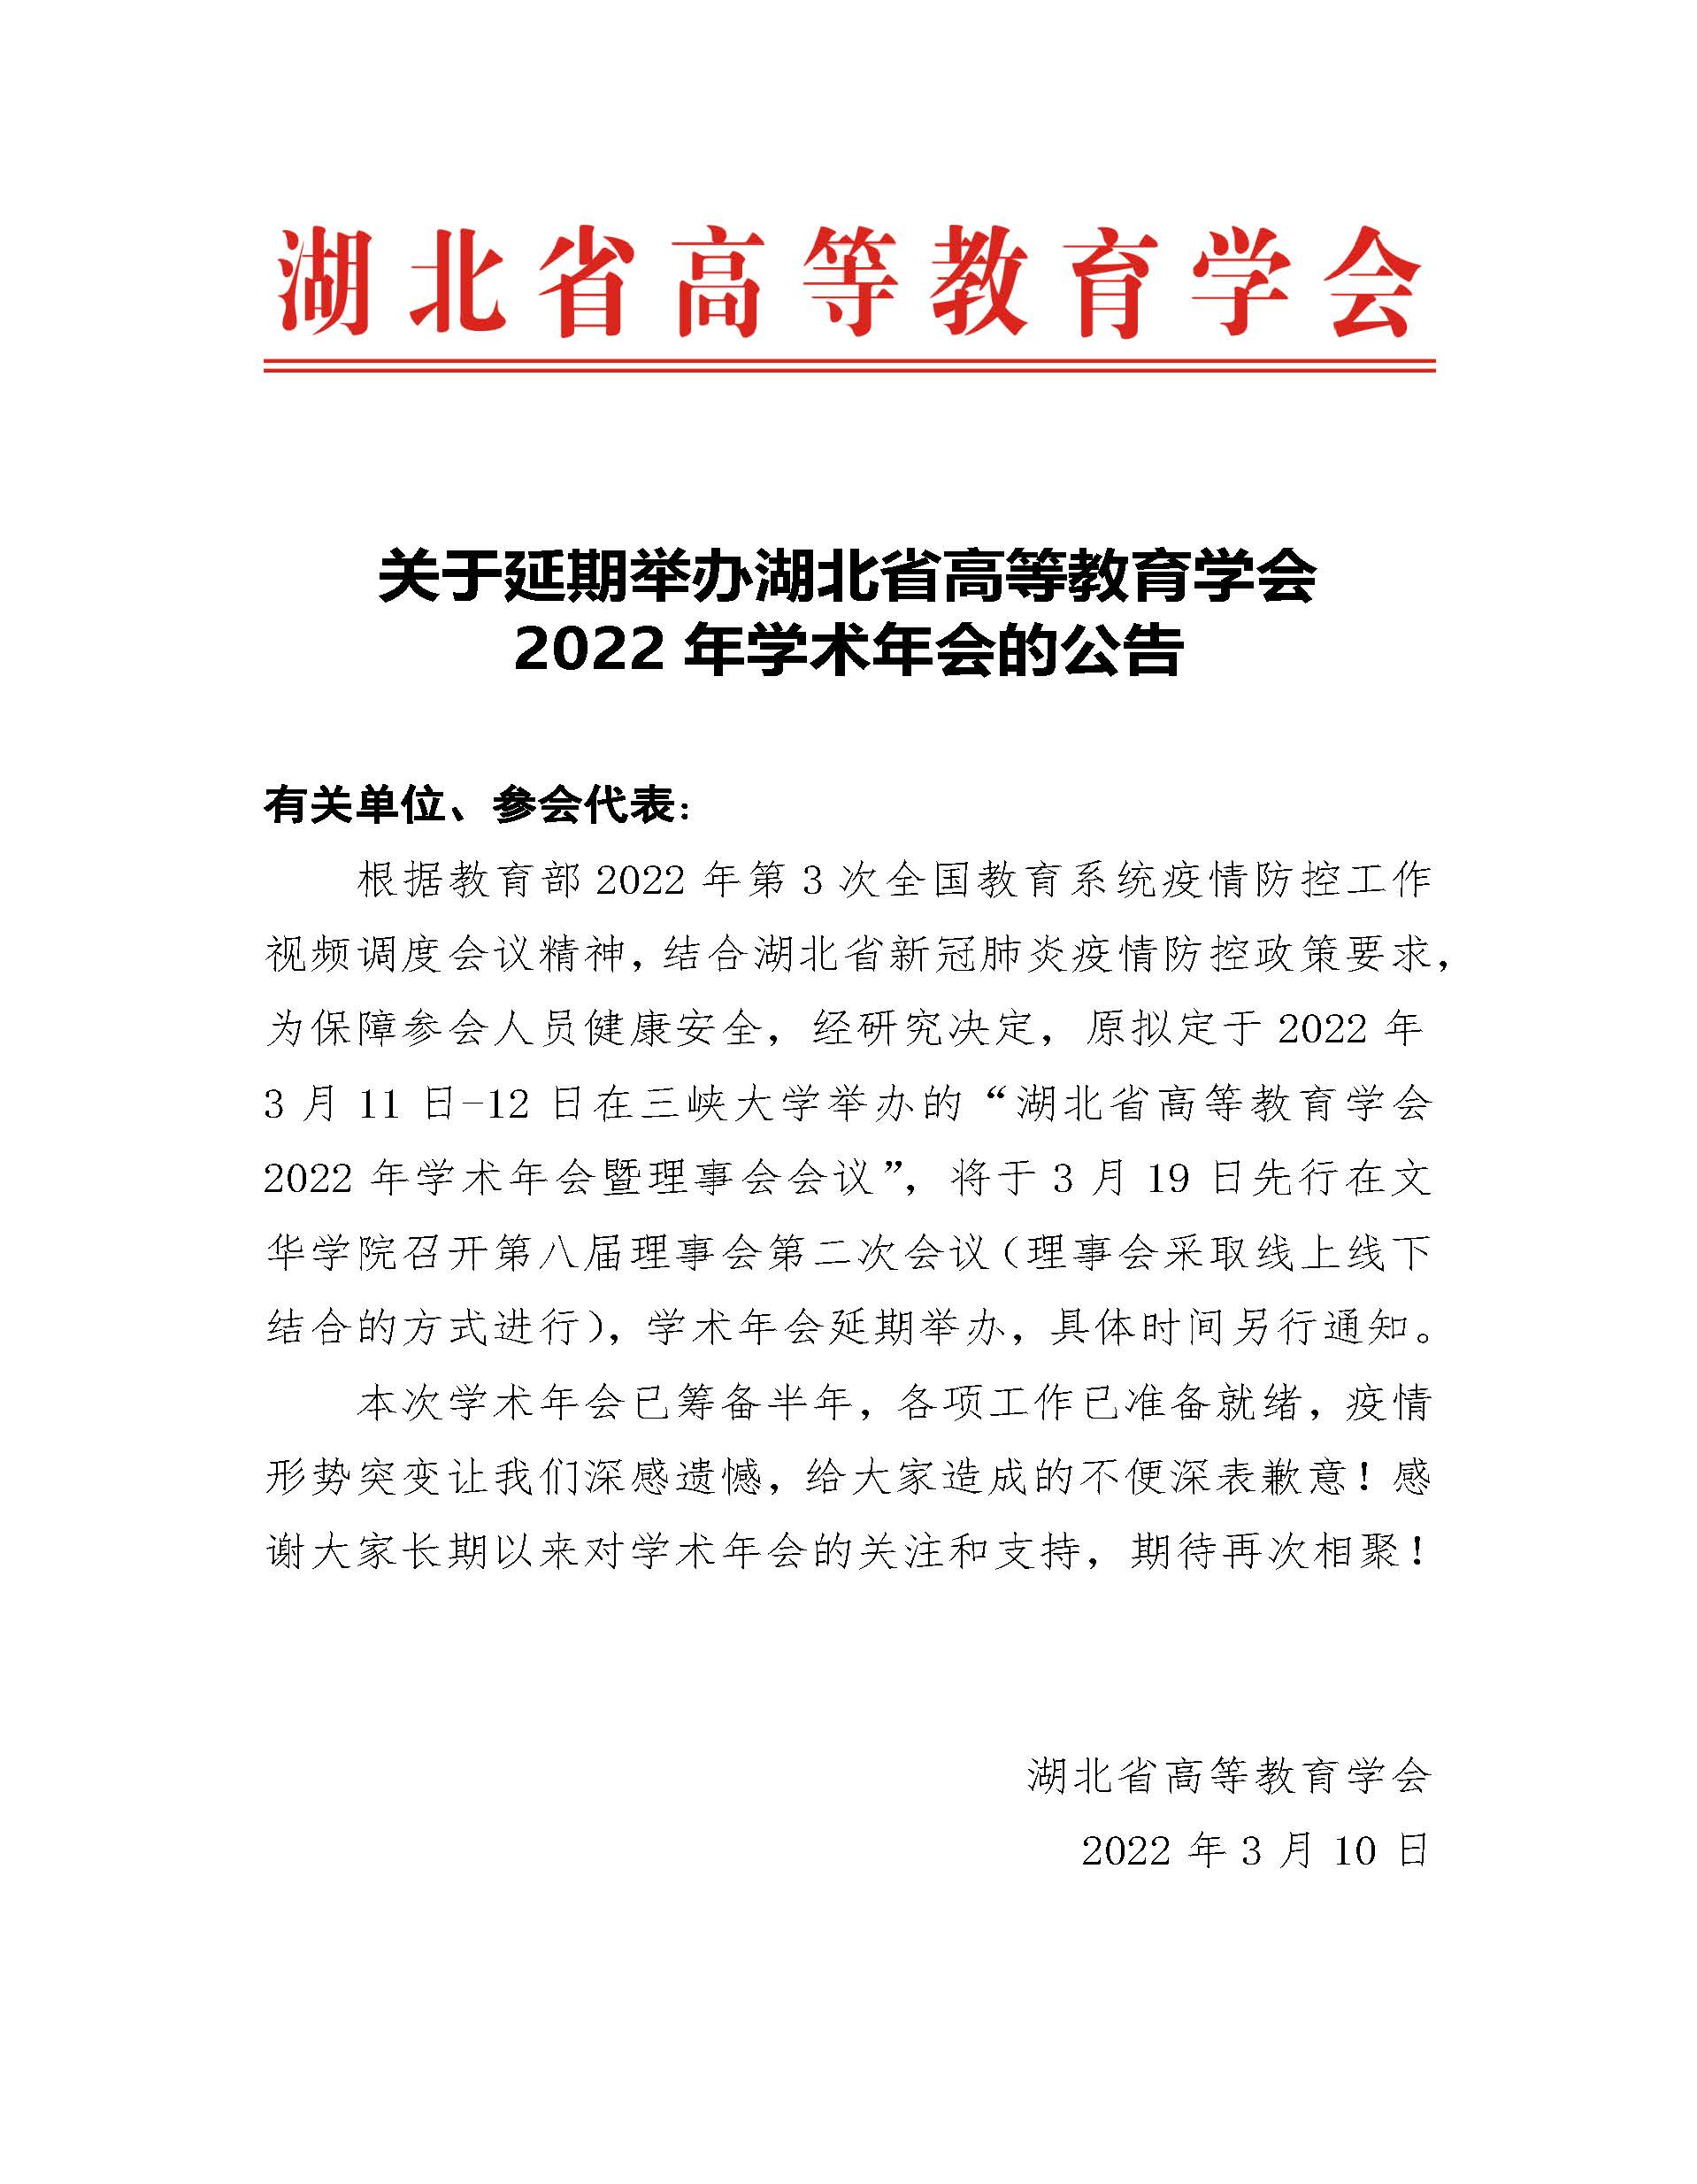 关于湖北省高等教育学会2022年学术年会延期举办的通知红头.jpg